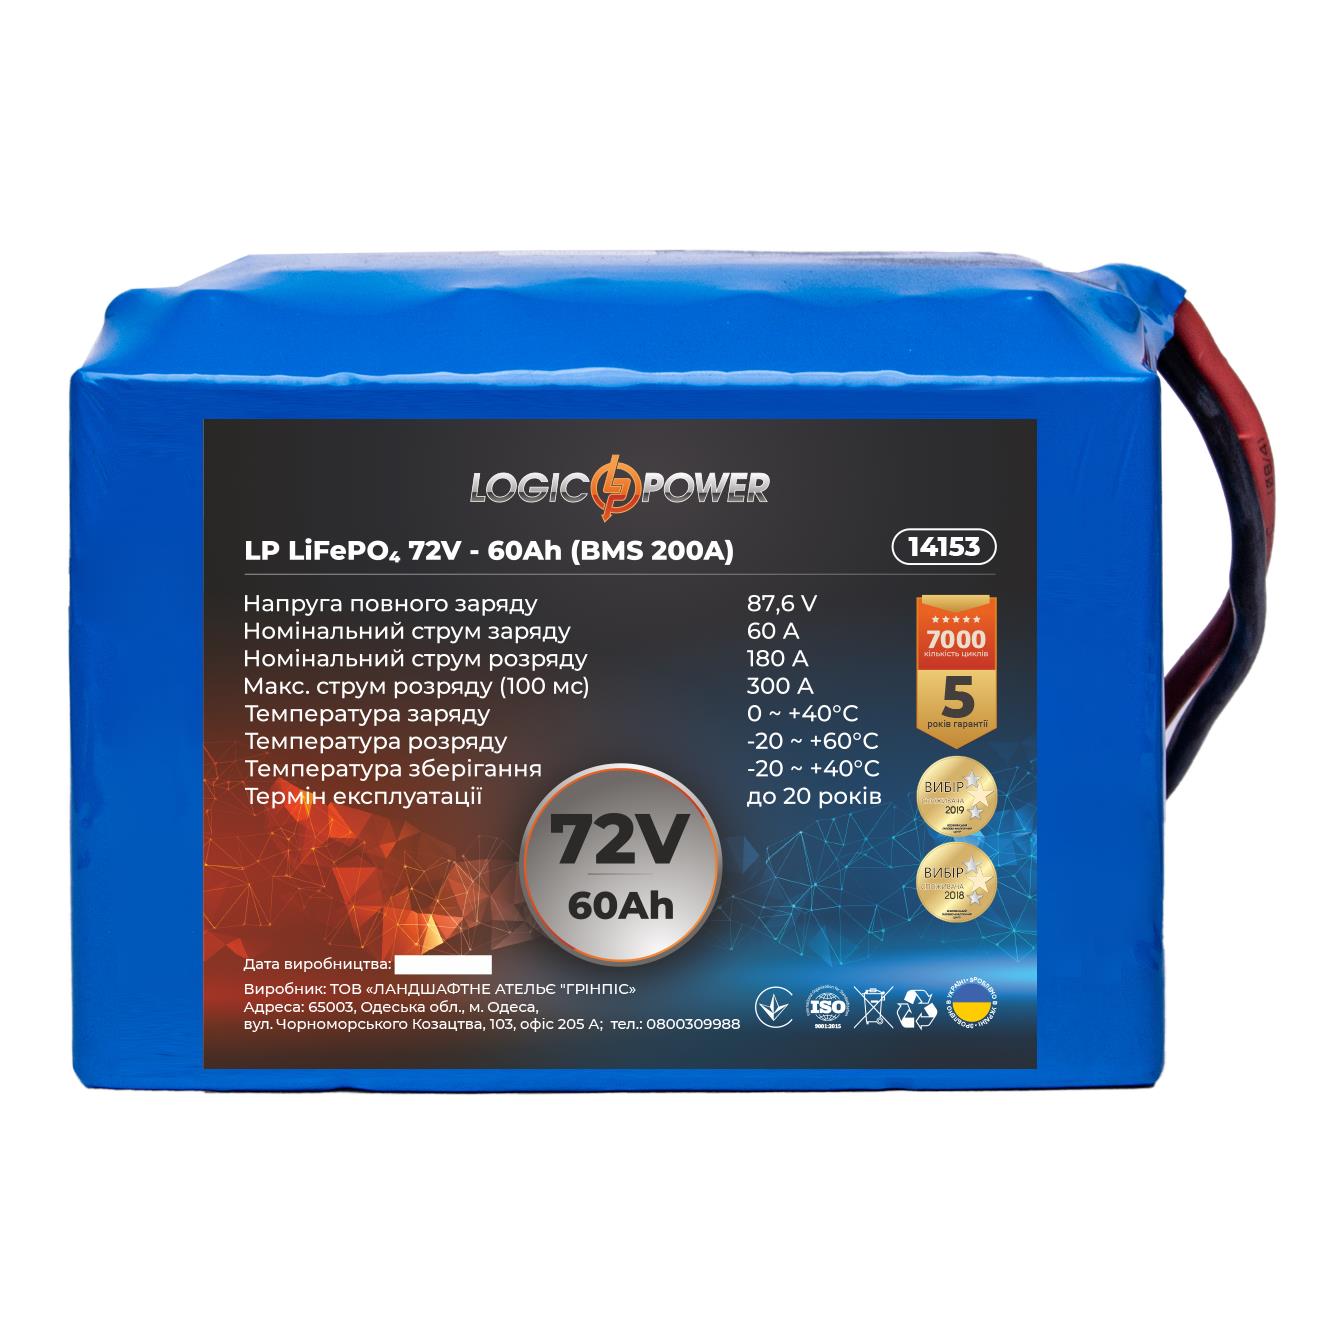 Аккумулятор литий-железо-фосфатный LogicPower LP LiFePO4 72V - 60 Ah (BMS 200A) (14153) в интернет-магазине, главное фото